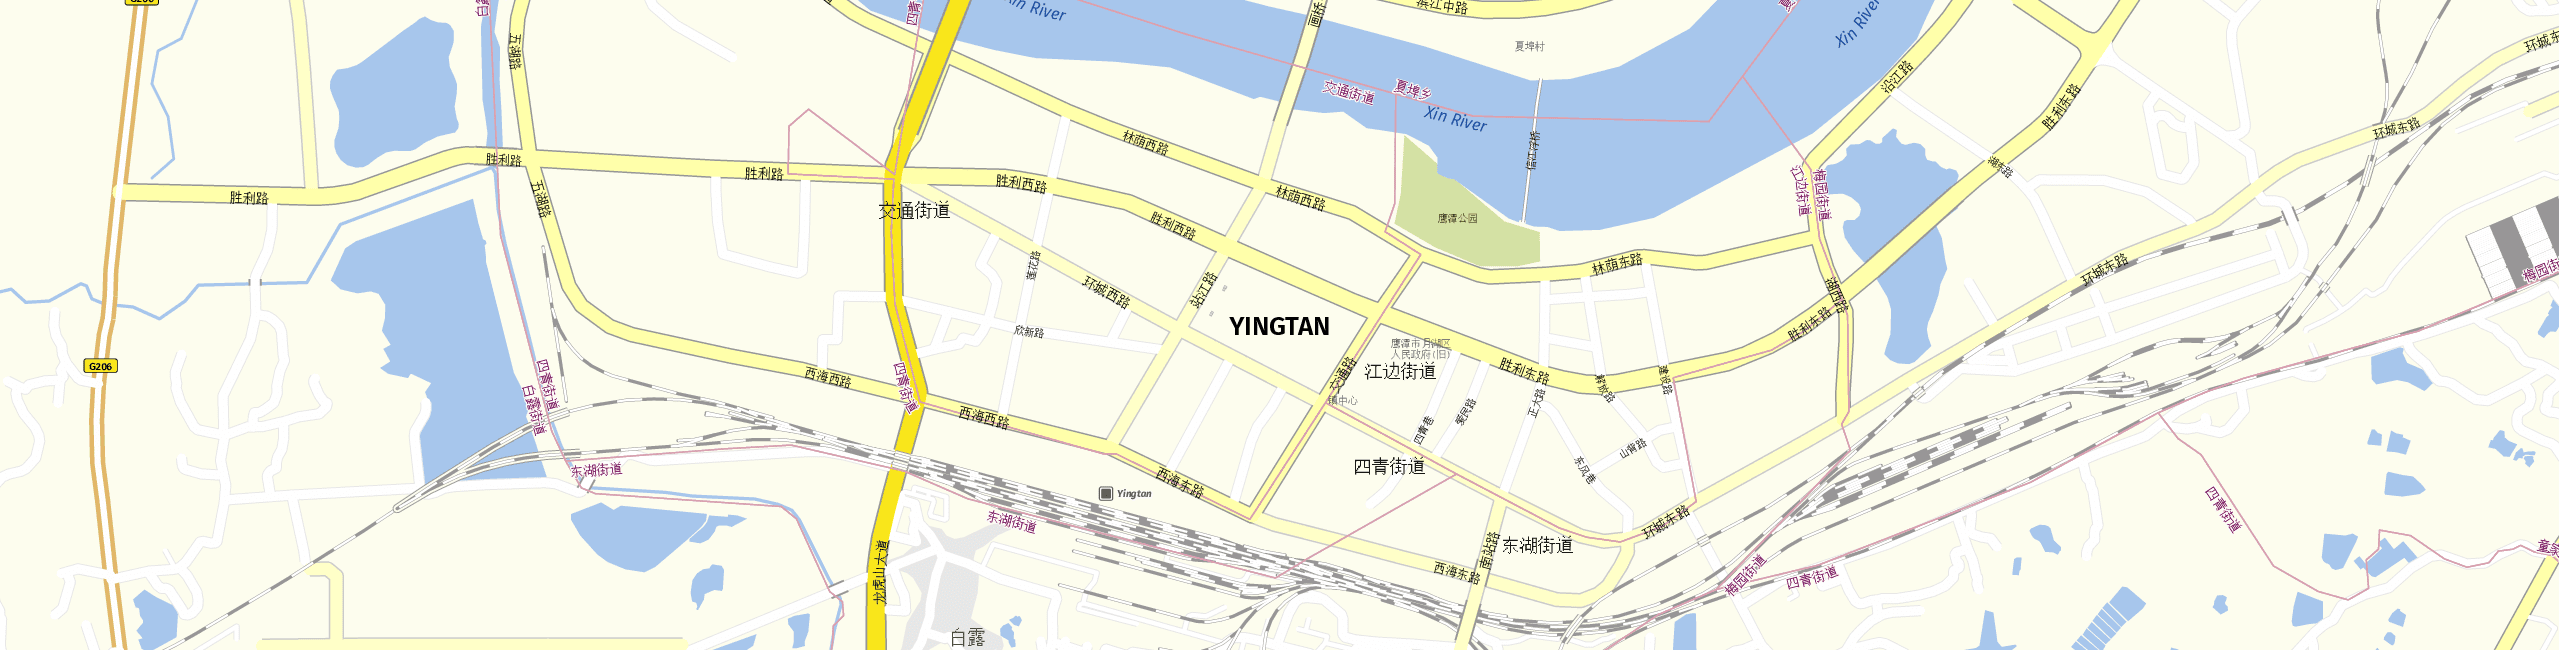 Stadtplan Yingtan zum Downloaden.